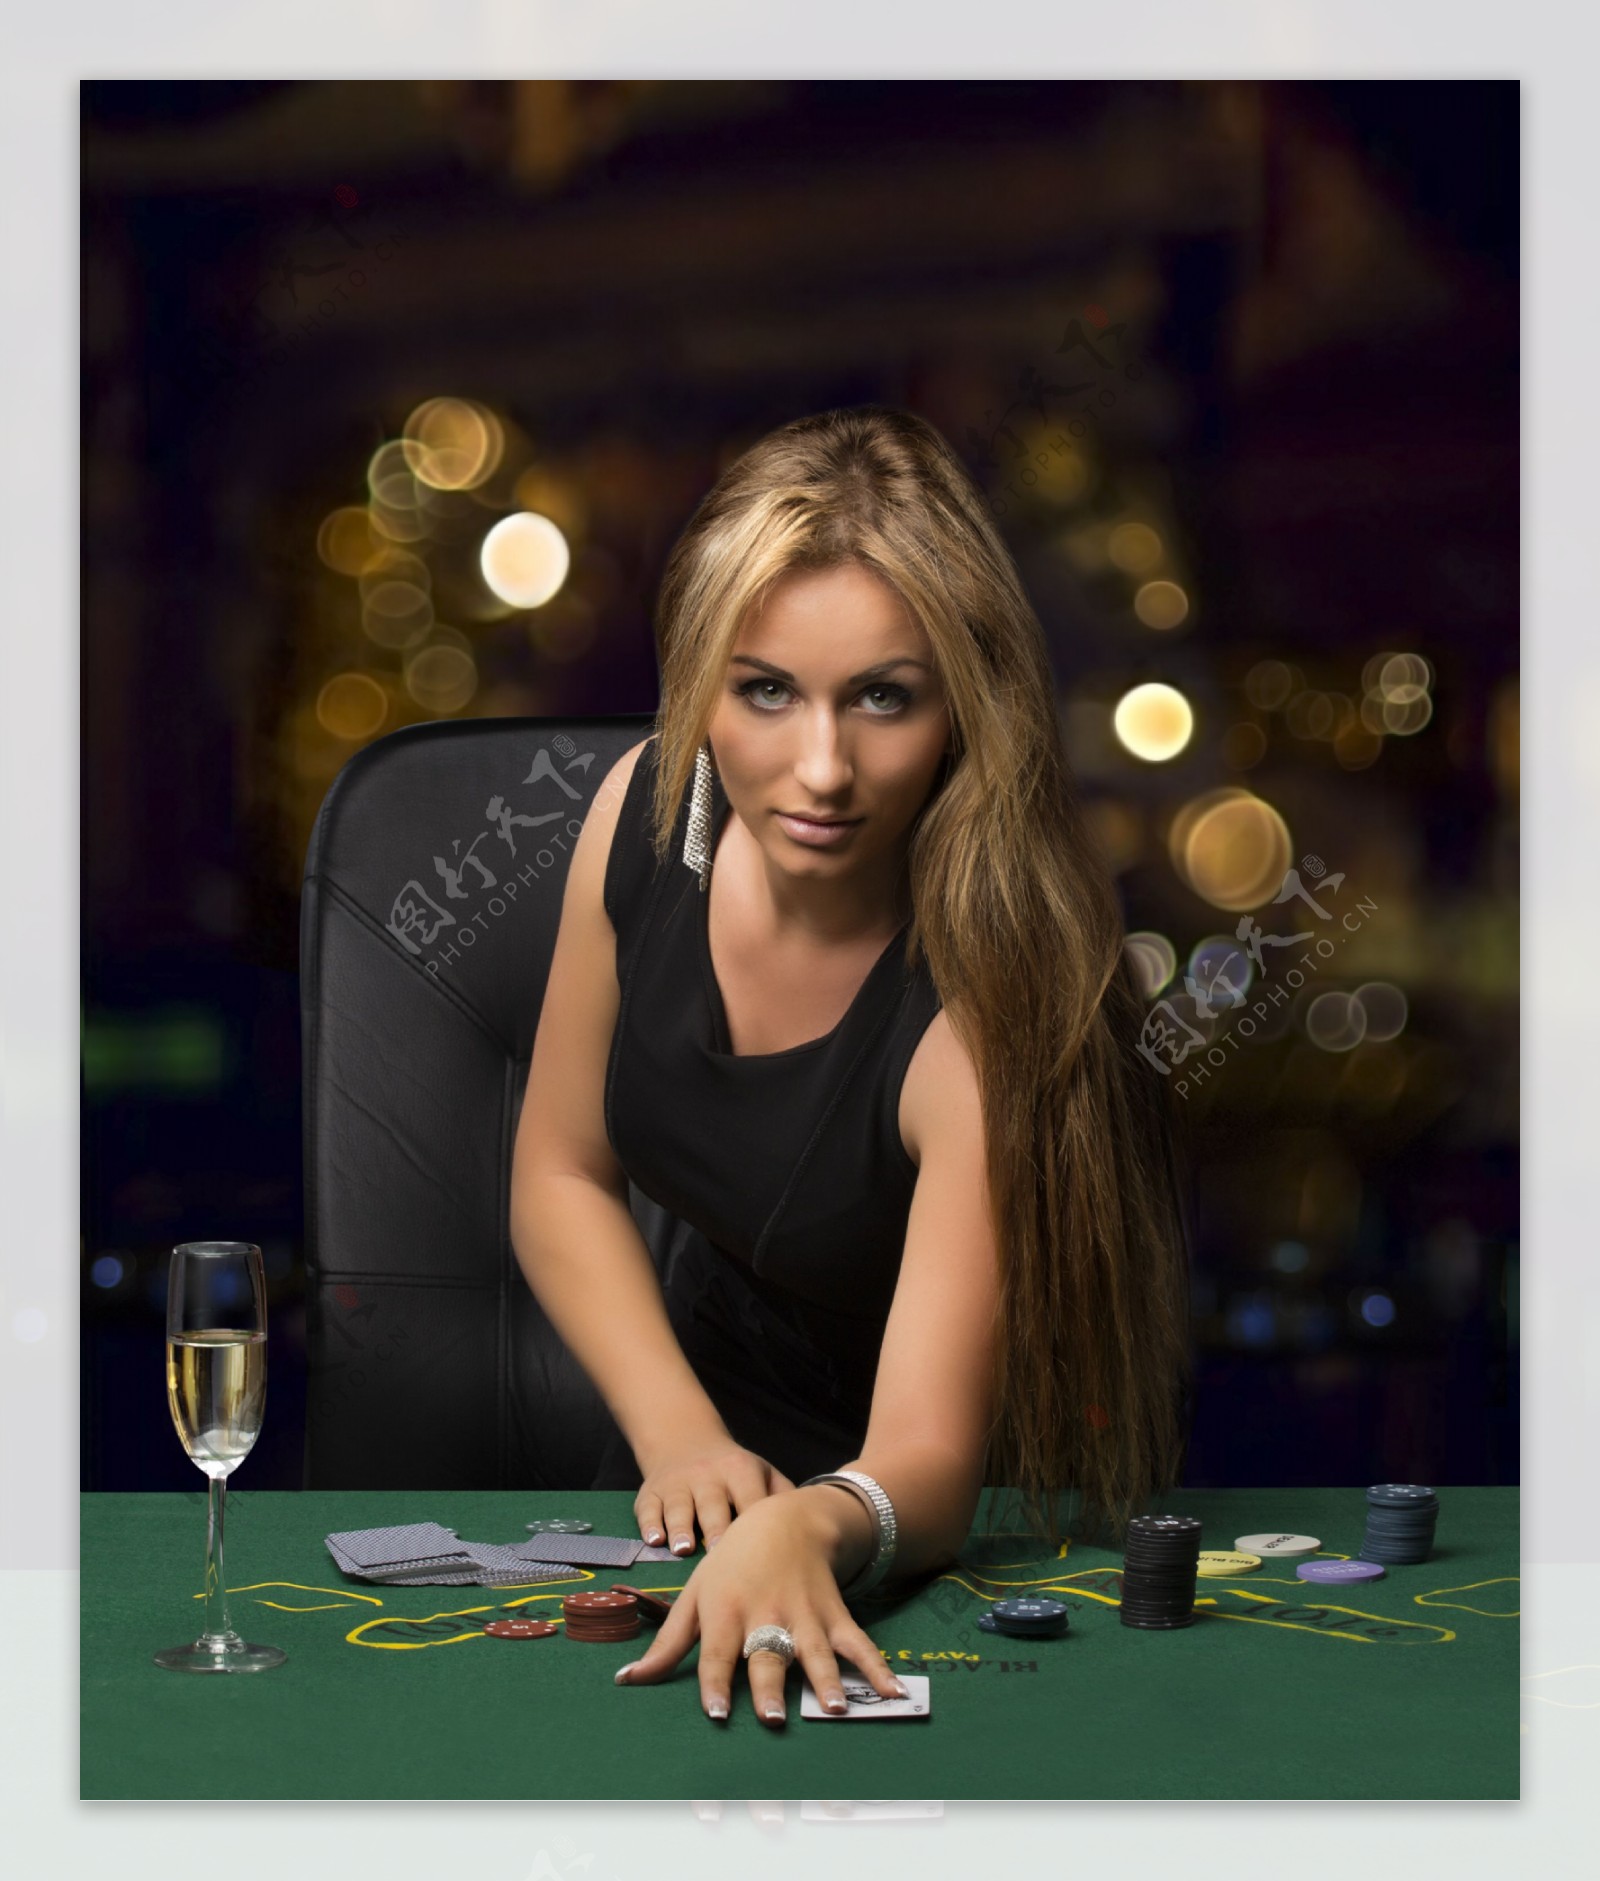 打扑克牌的美女图片